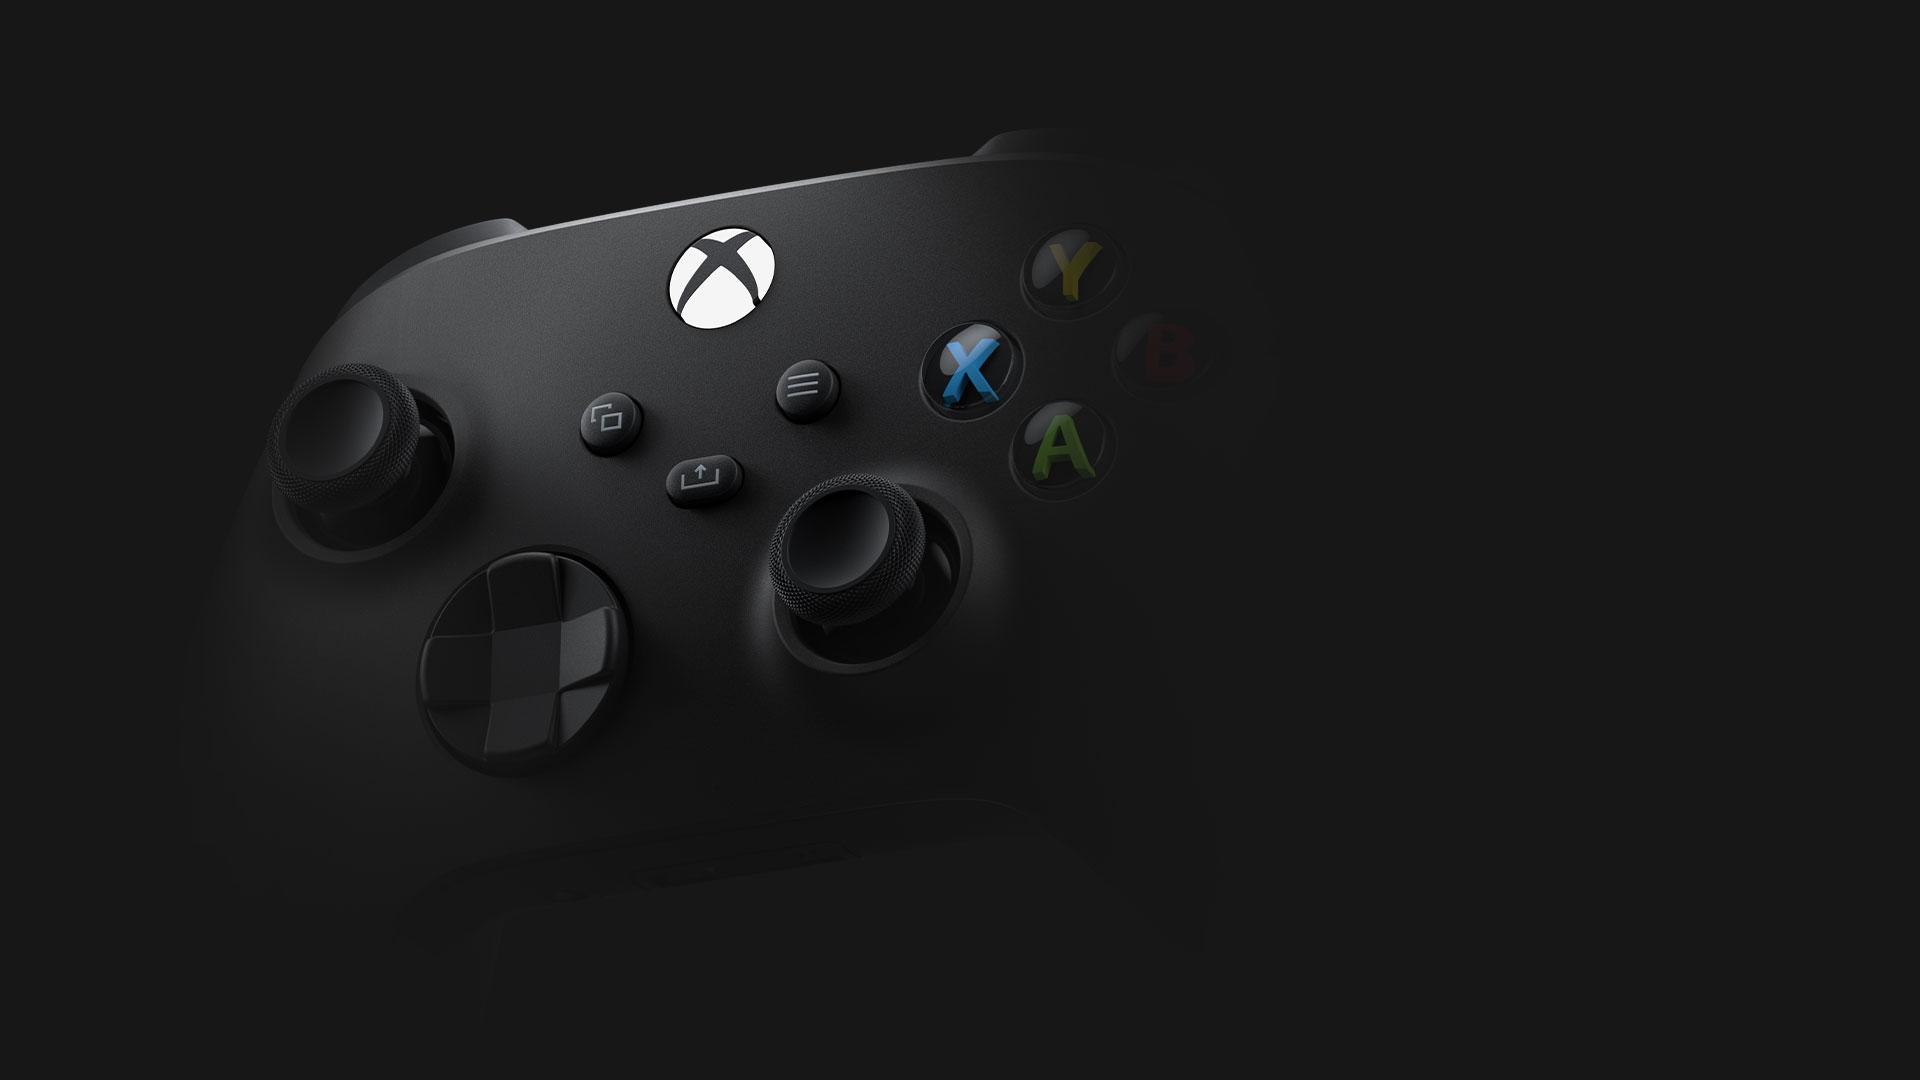 碳黑色 Xbox 無線控制器的正面